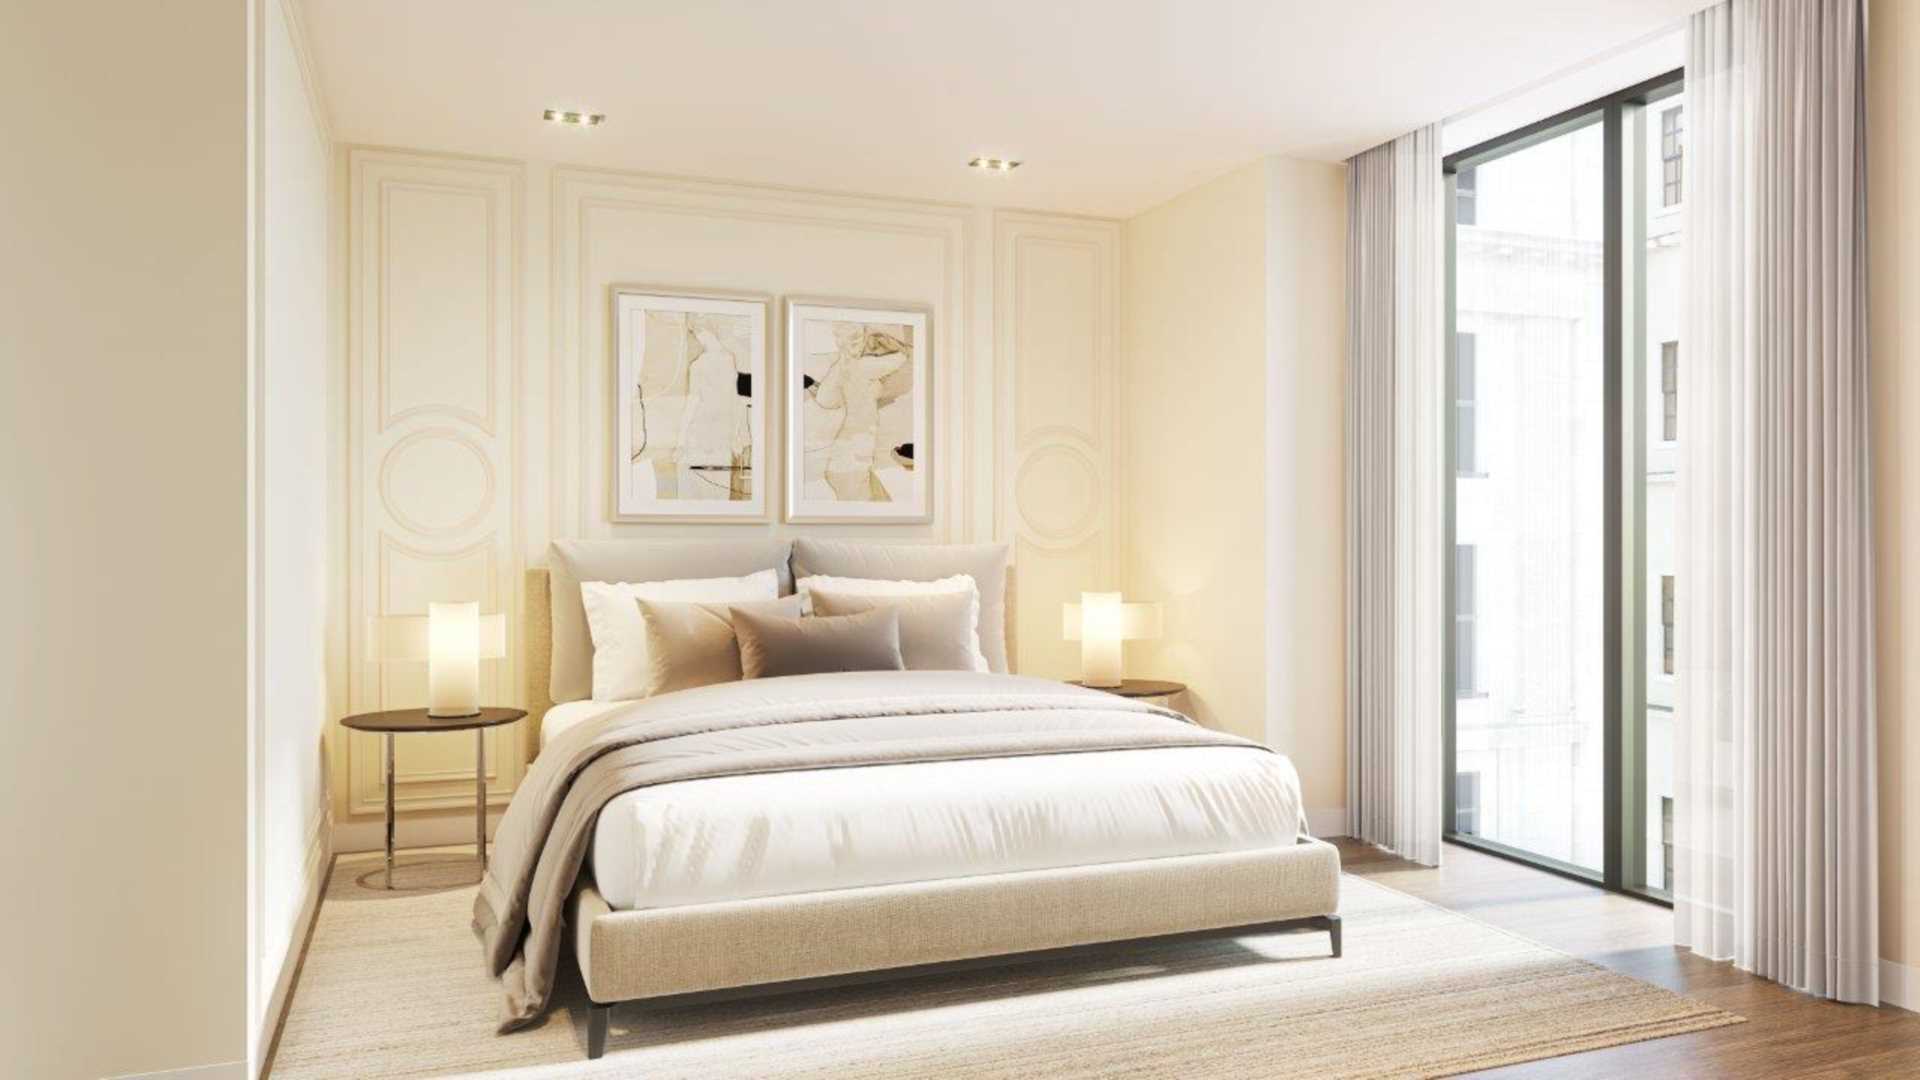 London W1W 5QJ 1 bed flat sales property internal/external image-1